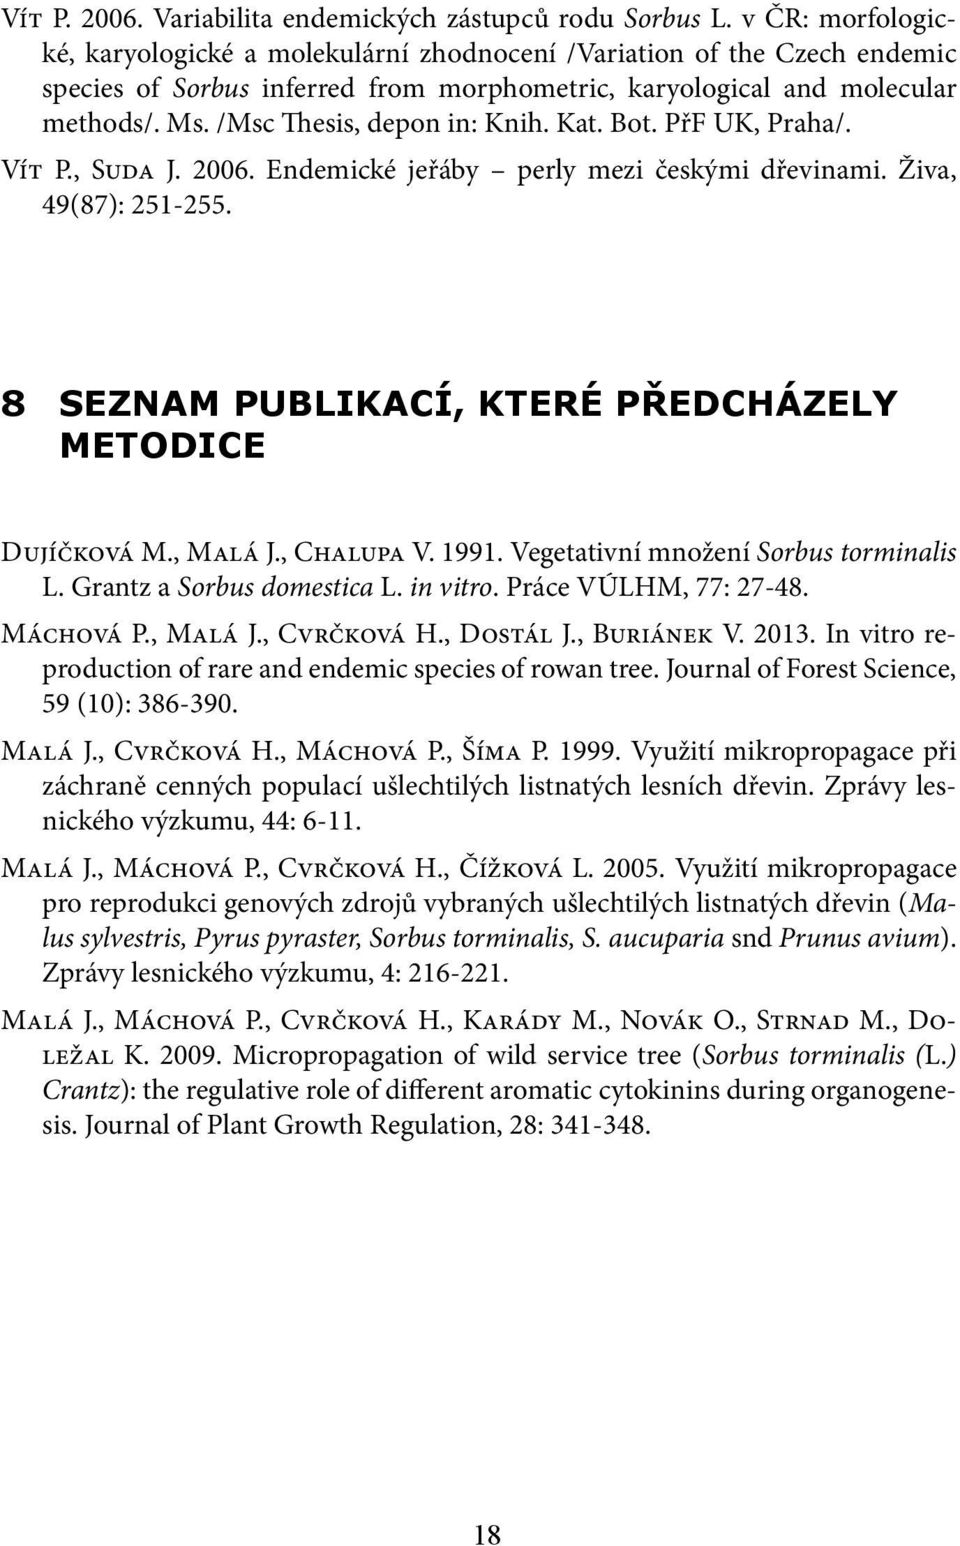 /Msc Thesis, depon in: Knih. Kat. Bot. PřF UK, Praha/. Vít P., Suda J. 2006. Endemické jeřáby perly mezi českými dřevinami. Živa, 49(87): 251-255.